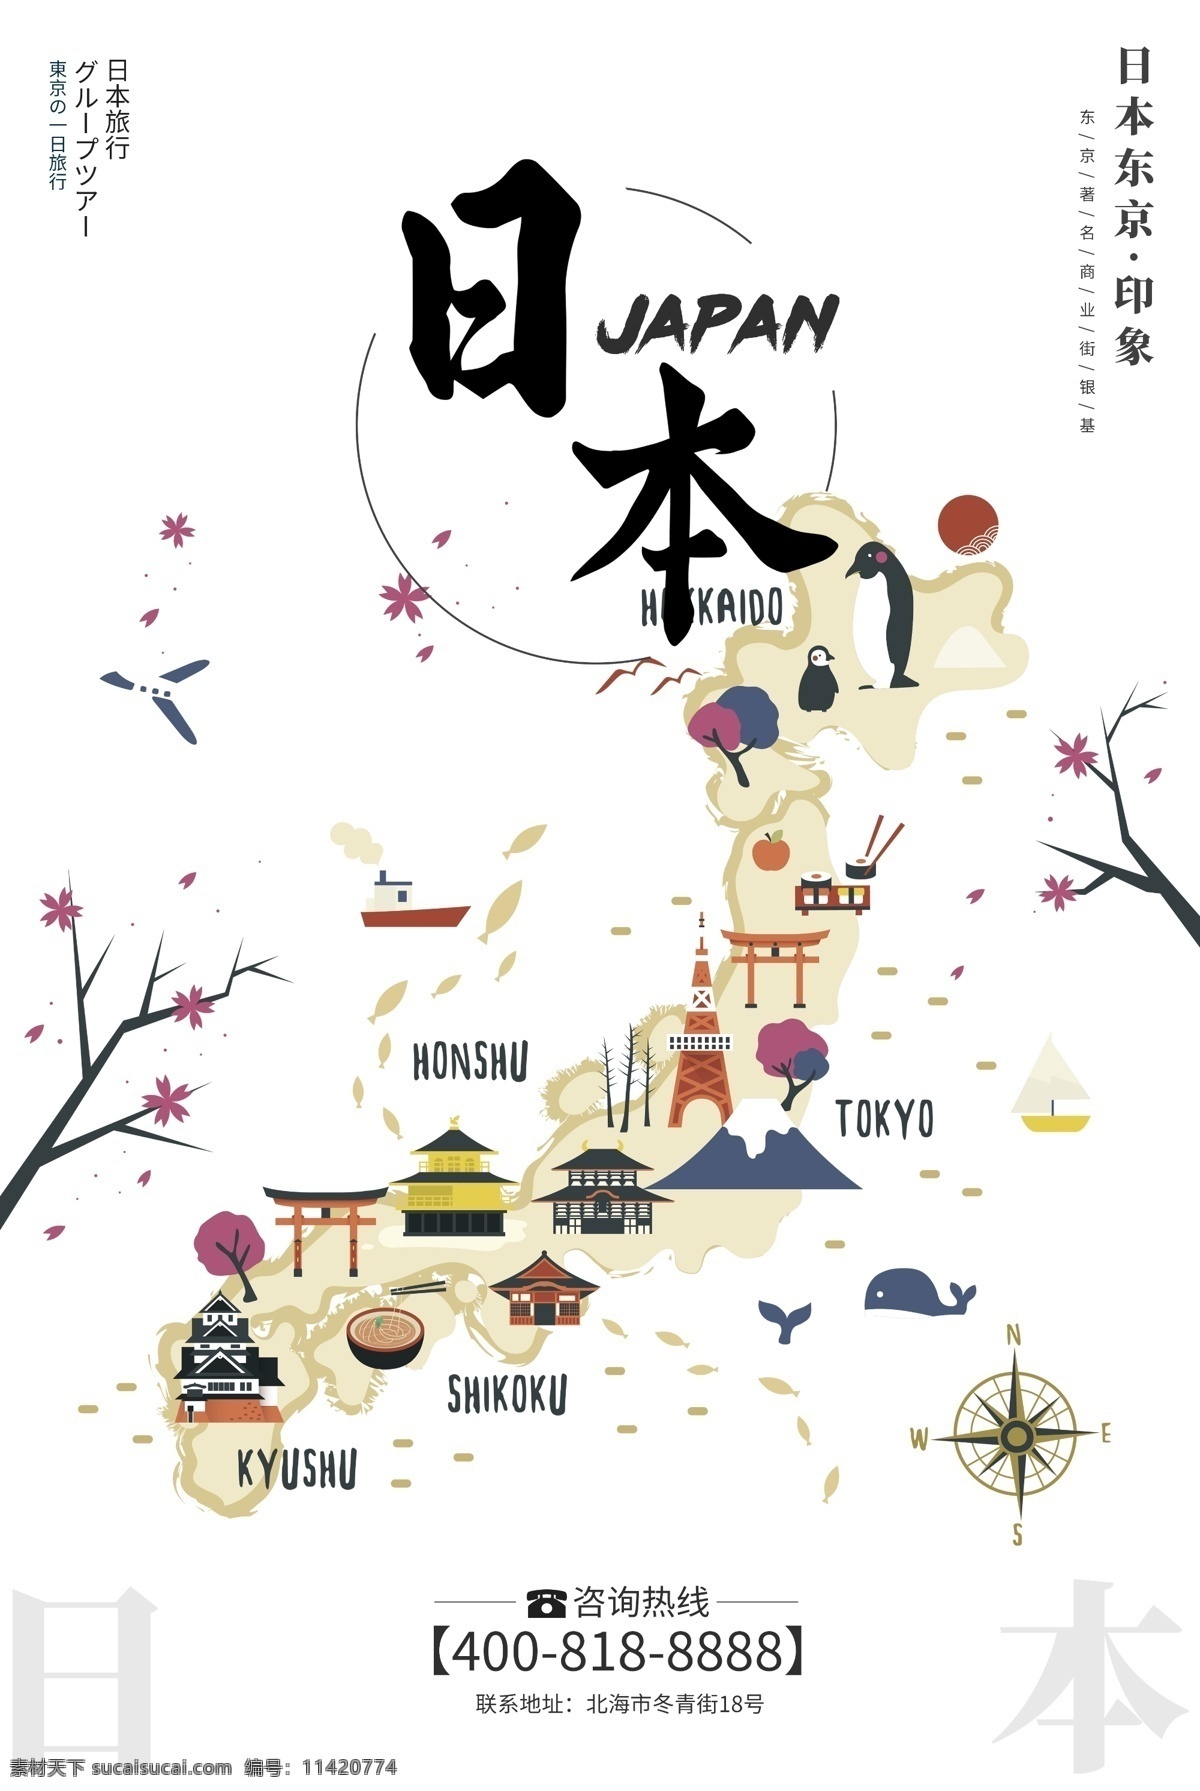 创意 极 简 插画 风格 日本旅游 户外 海报 日本风格 东京 大阪 日本旅游海报 免费模版 日本旅行 日本印象 日本旅游风光 日本旅游景点 日本旅游攻略 日本旅游画册 日本旅游文化